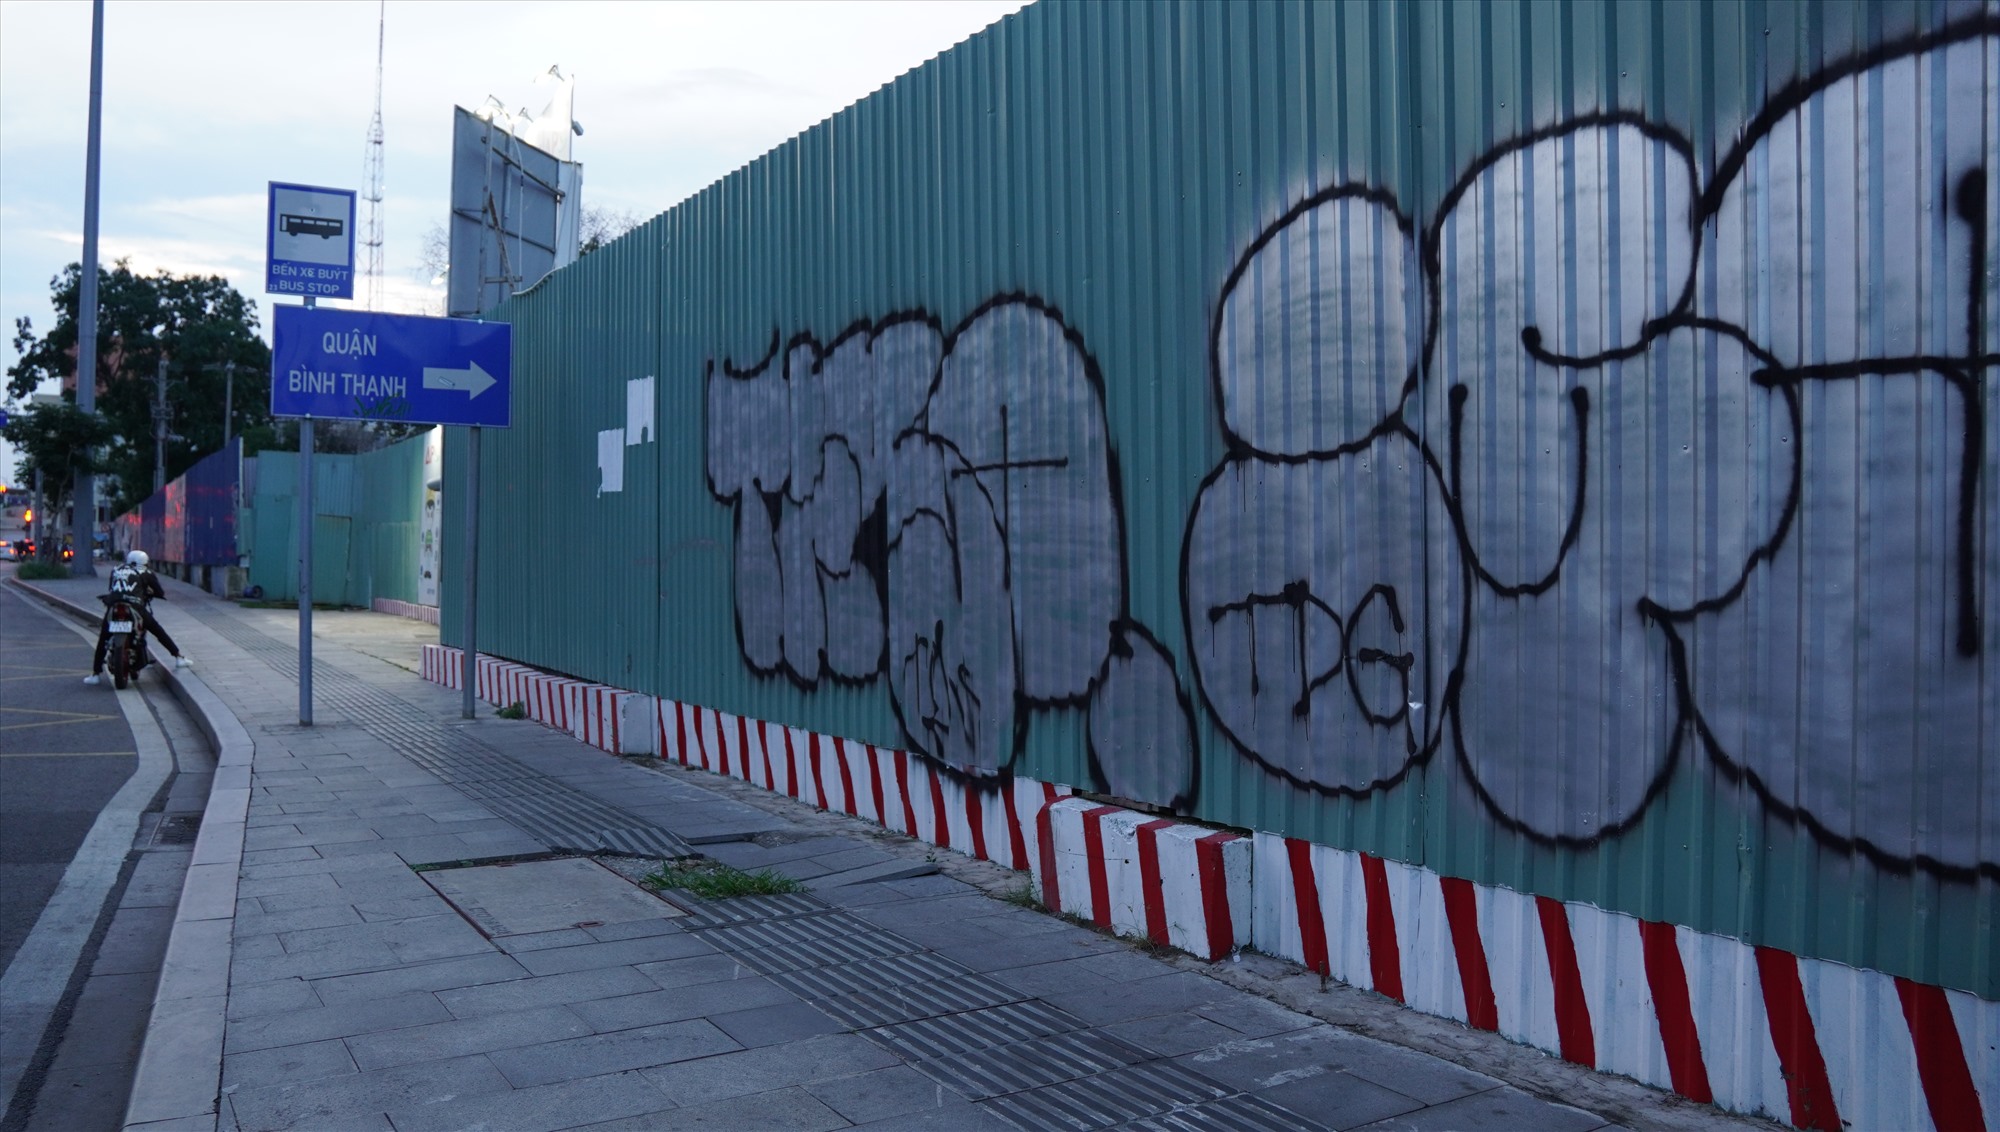 Nét vẽ bằng sơn xịt màu đỏ và đen, mang bóng dáng của graffiti - thuộc nhóm các loại hình nghệ thuật đường phố.